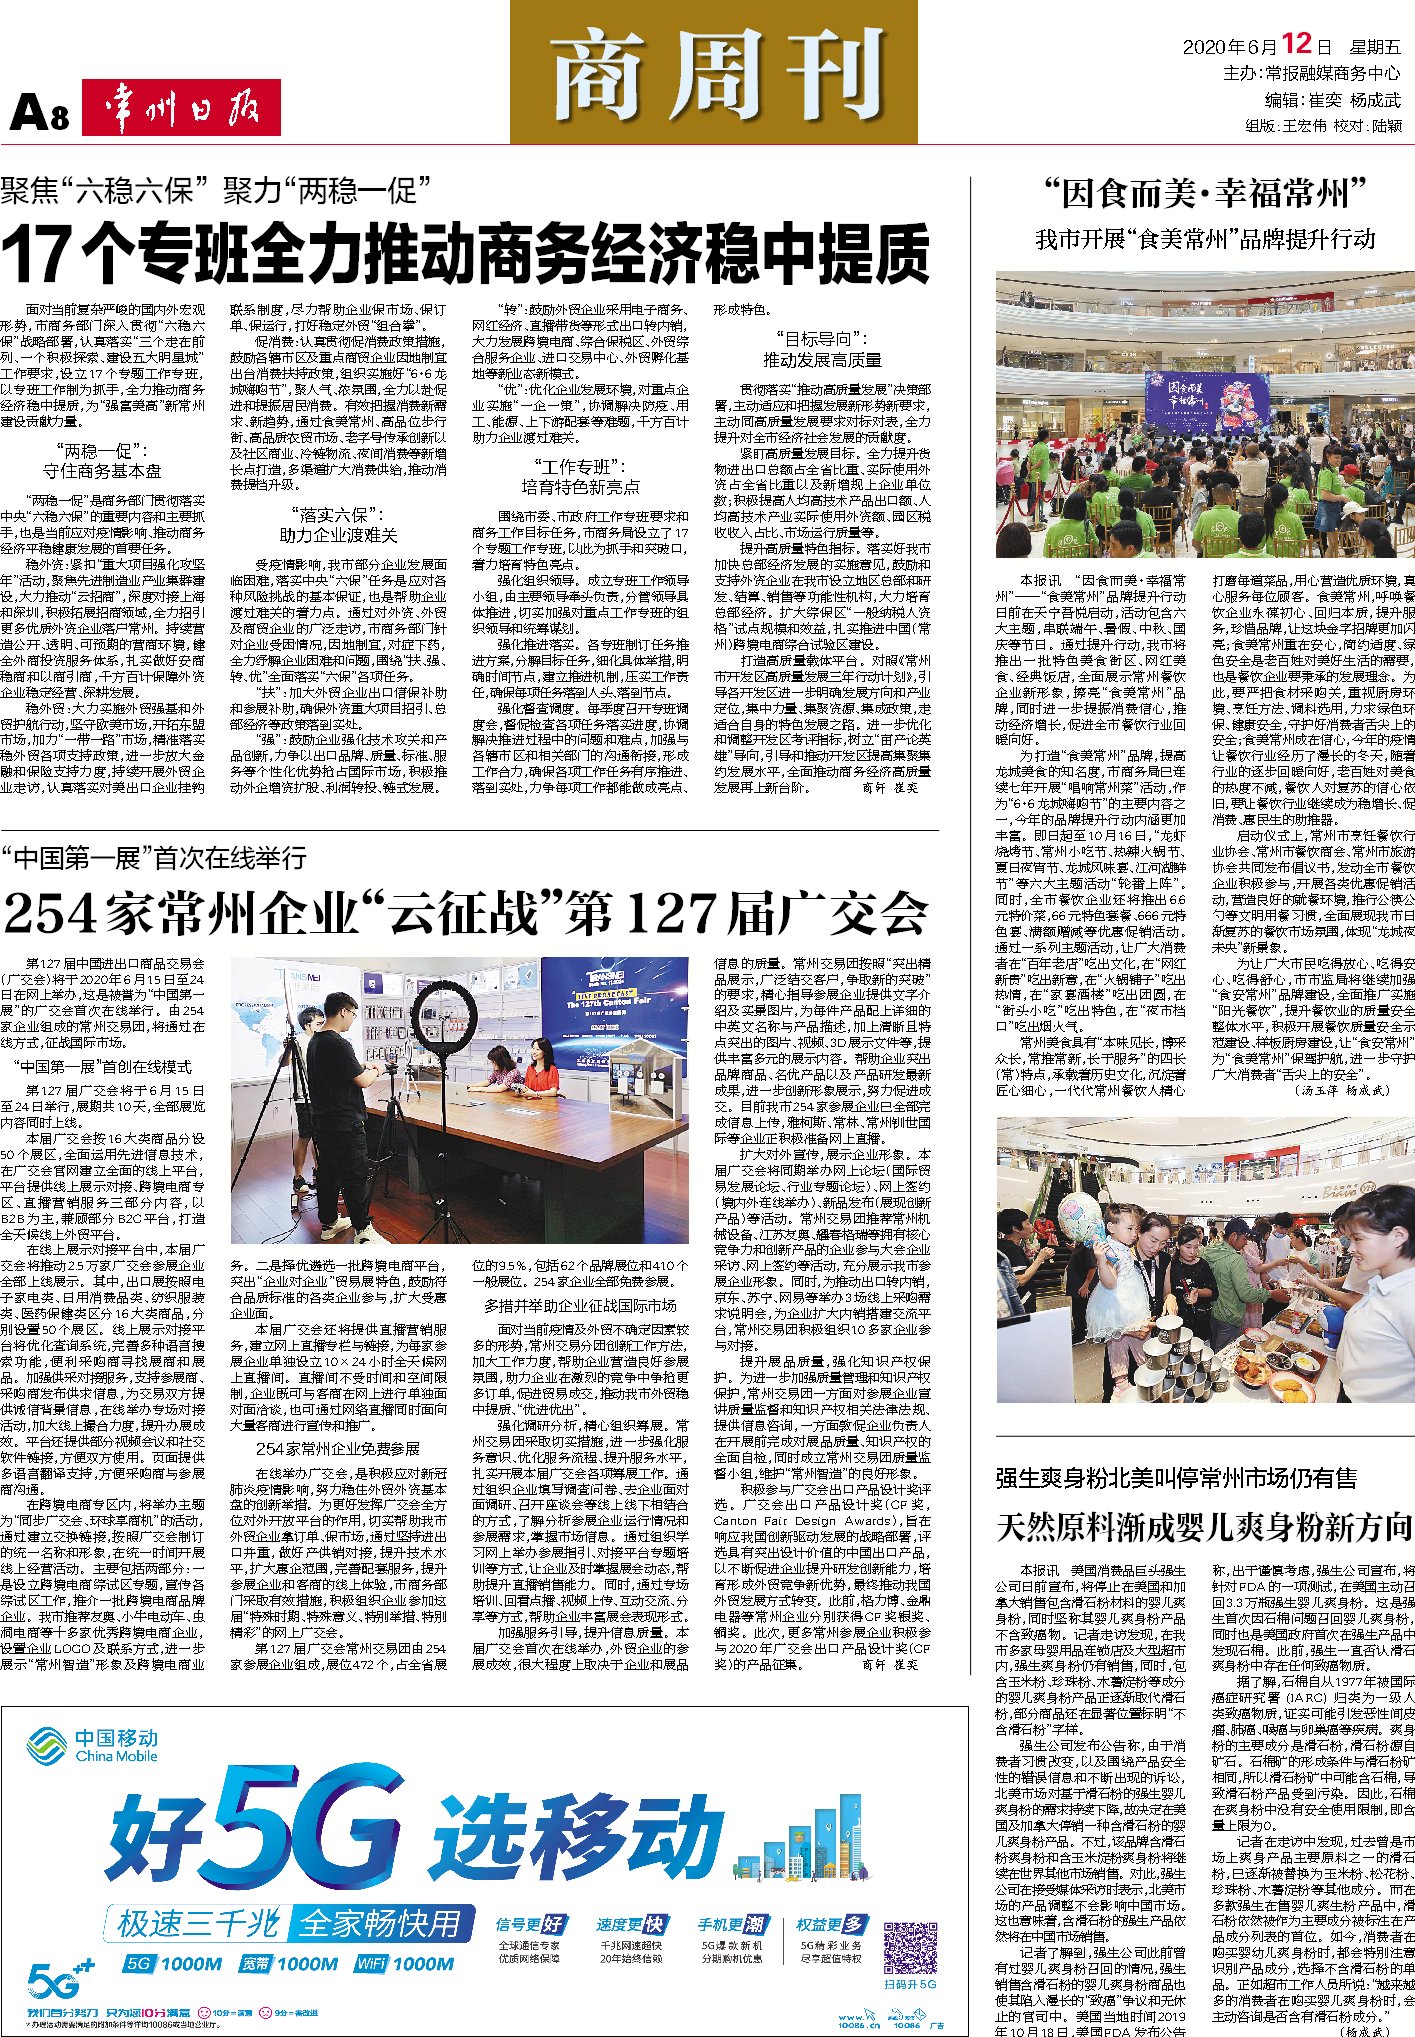 Changzhou Daily Newpaper Interview Transmei 